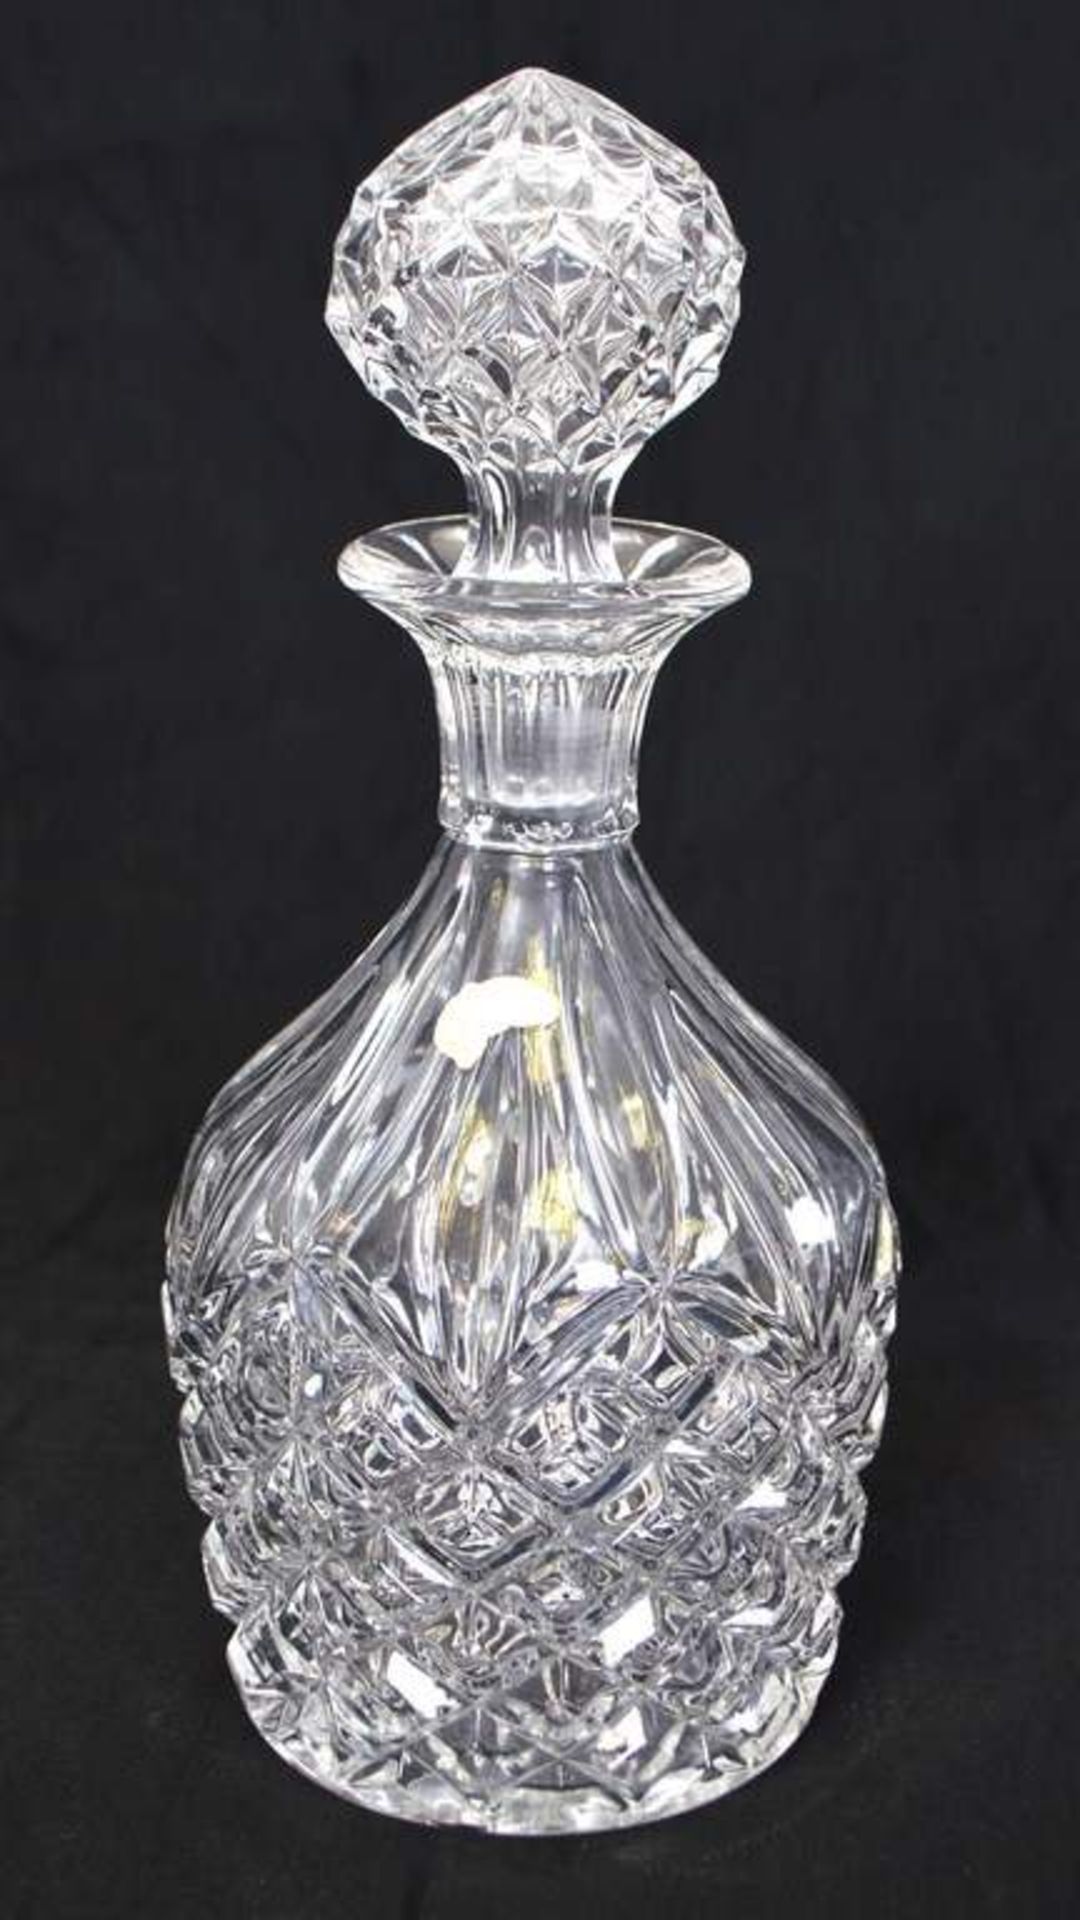 Karaffe farbl. Kristallglas, verziert, mit Stöpsel, H 26 cm